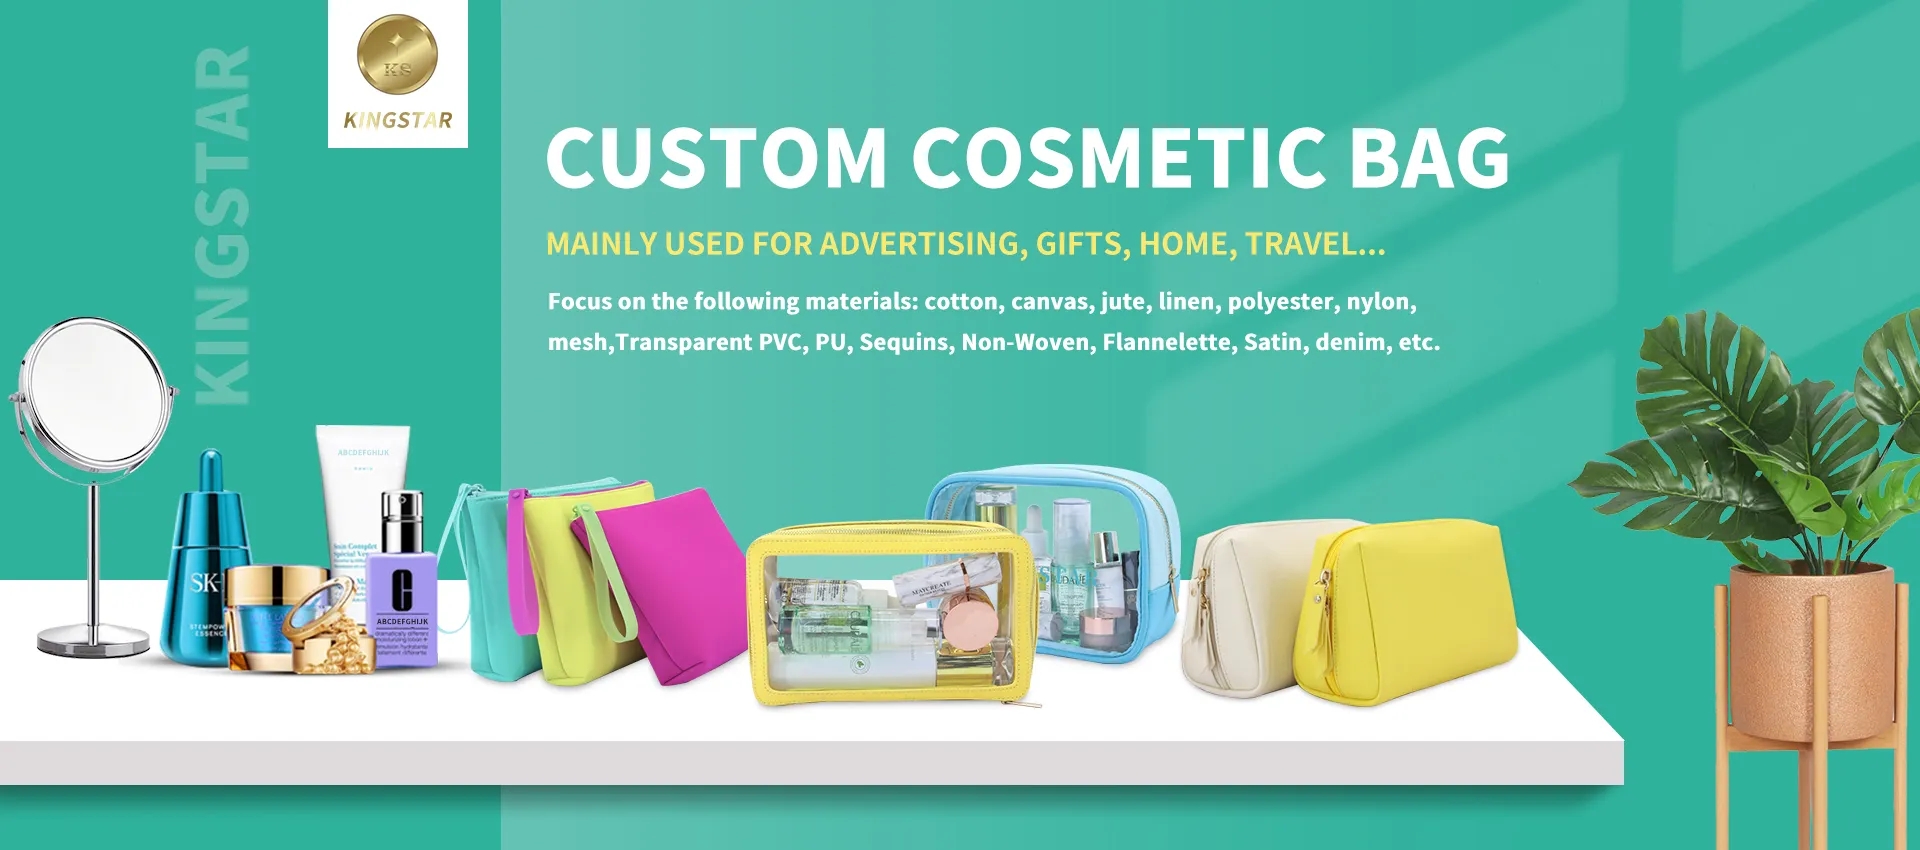 Customize your own makeup kit